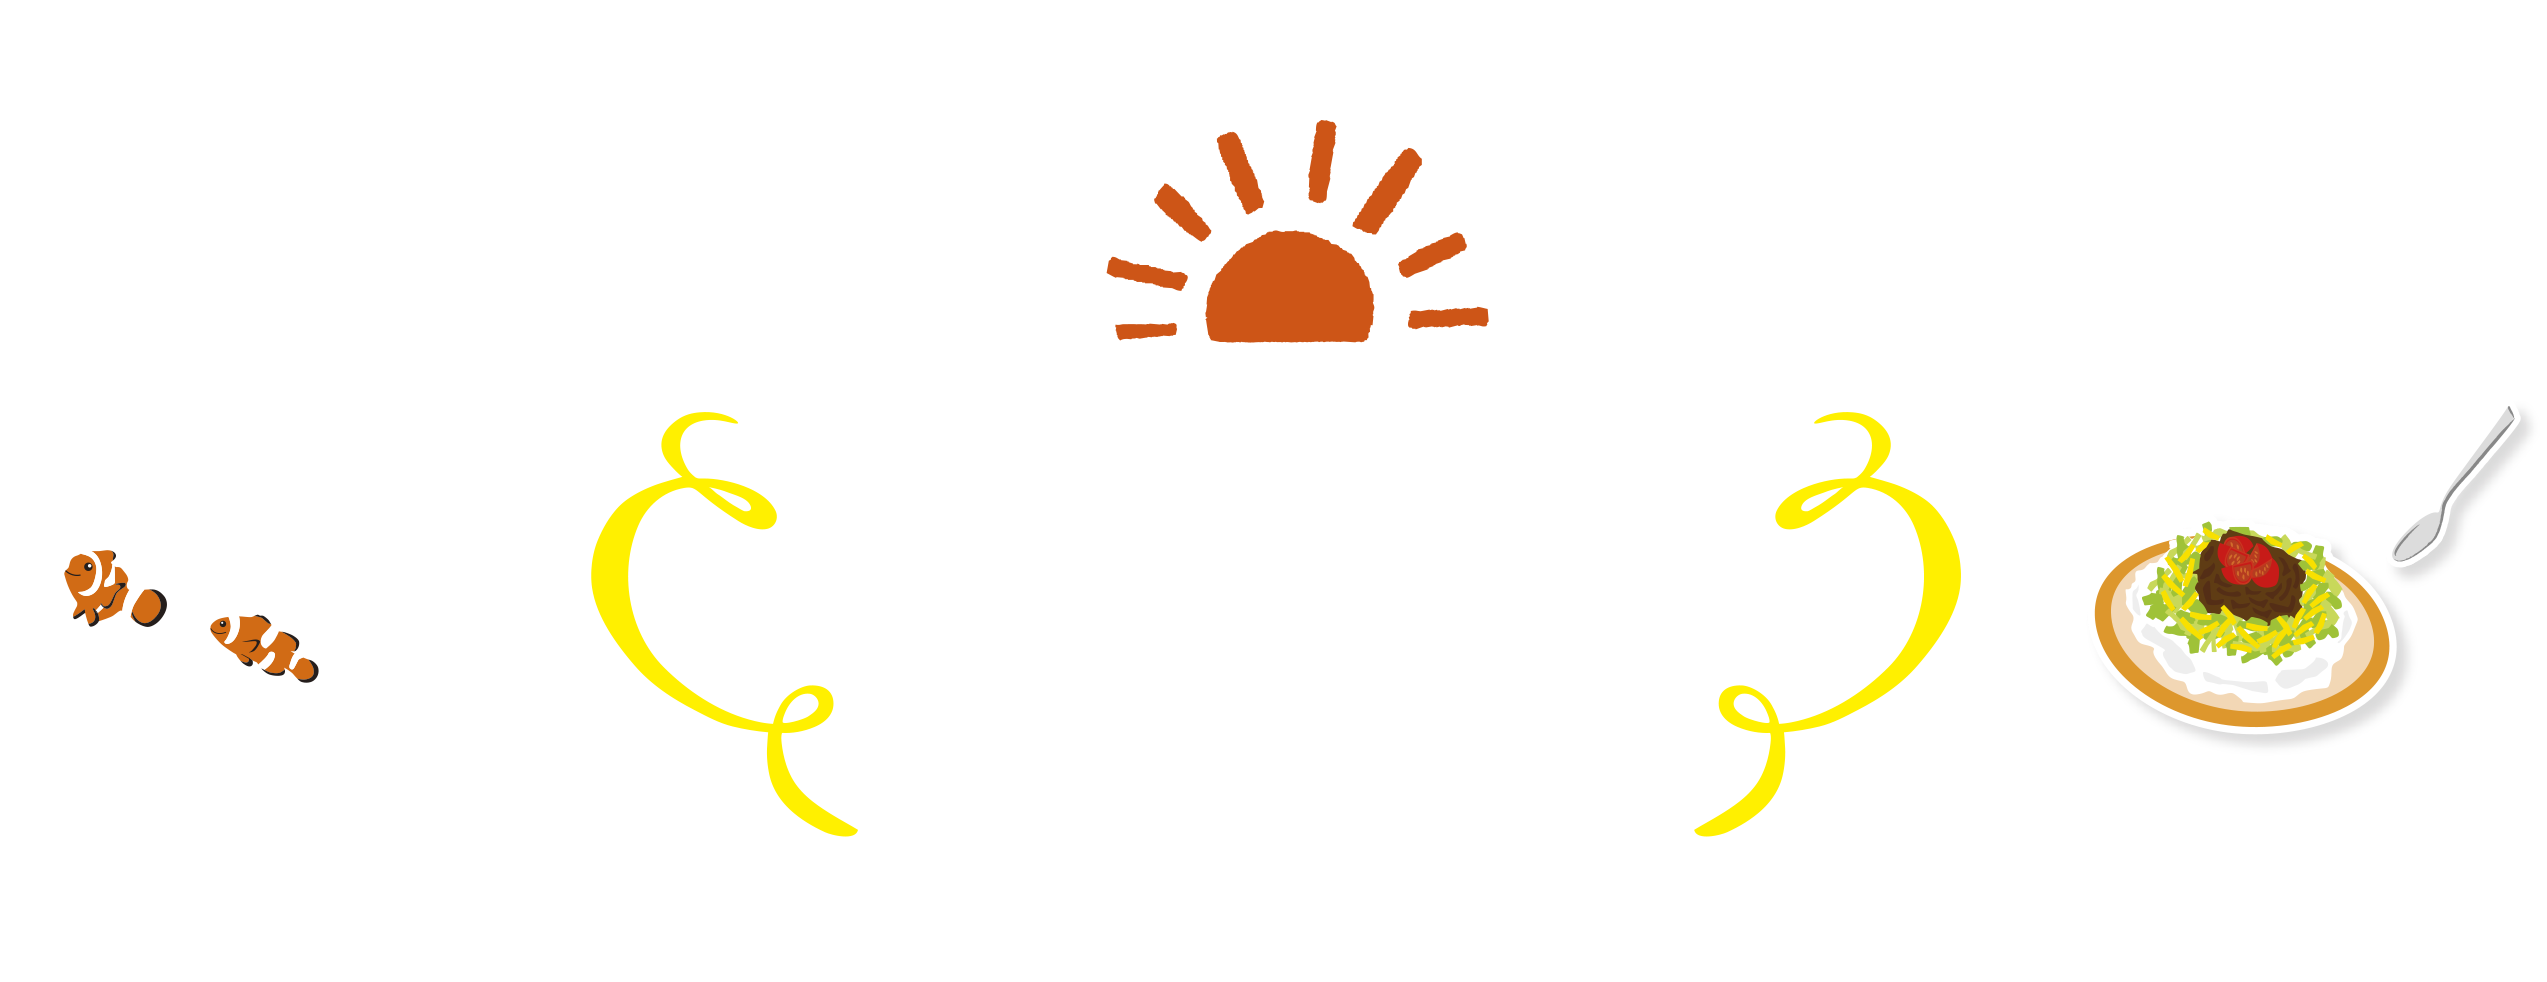 チャレンジサイクリング 90km